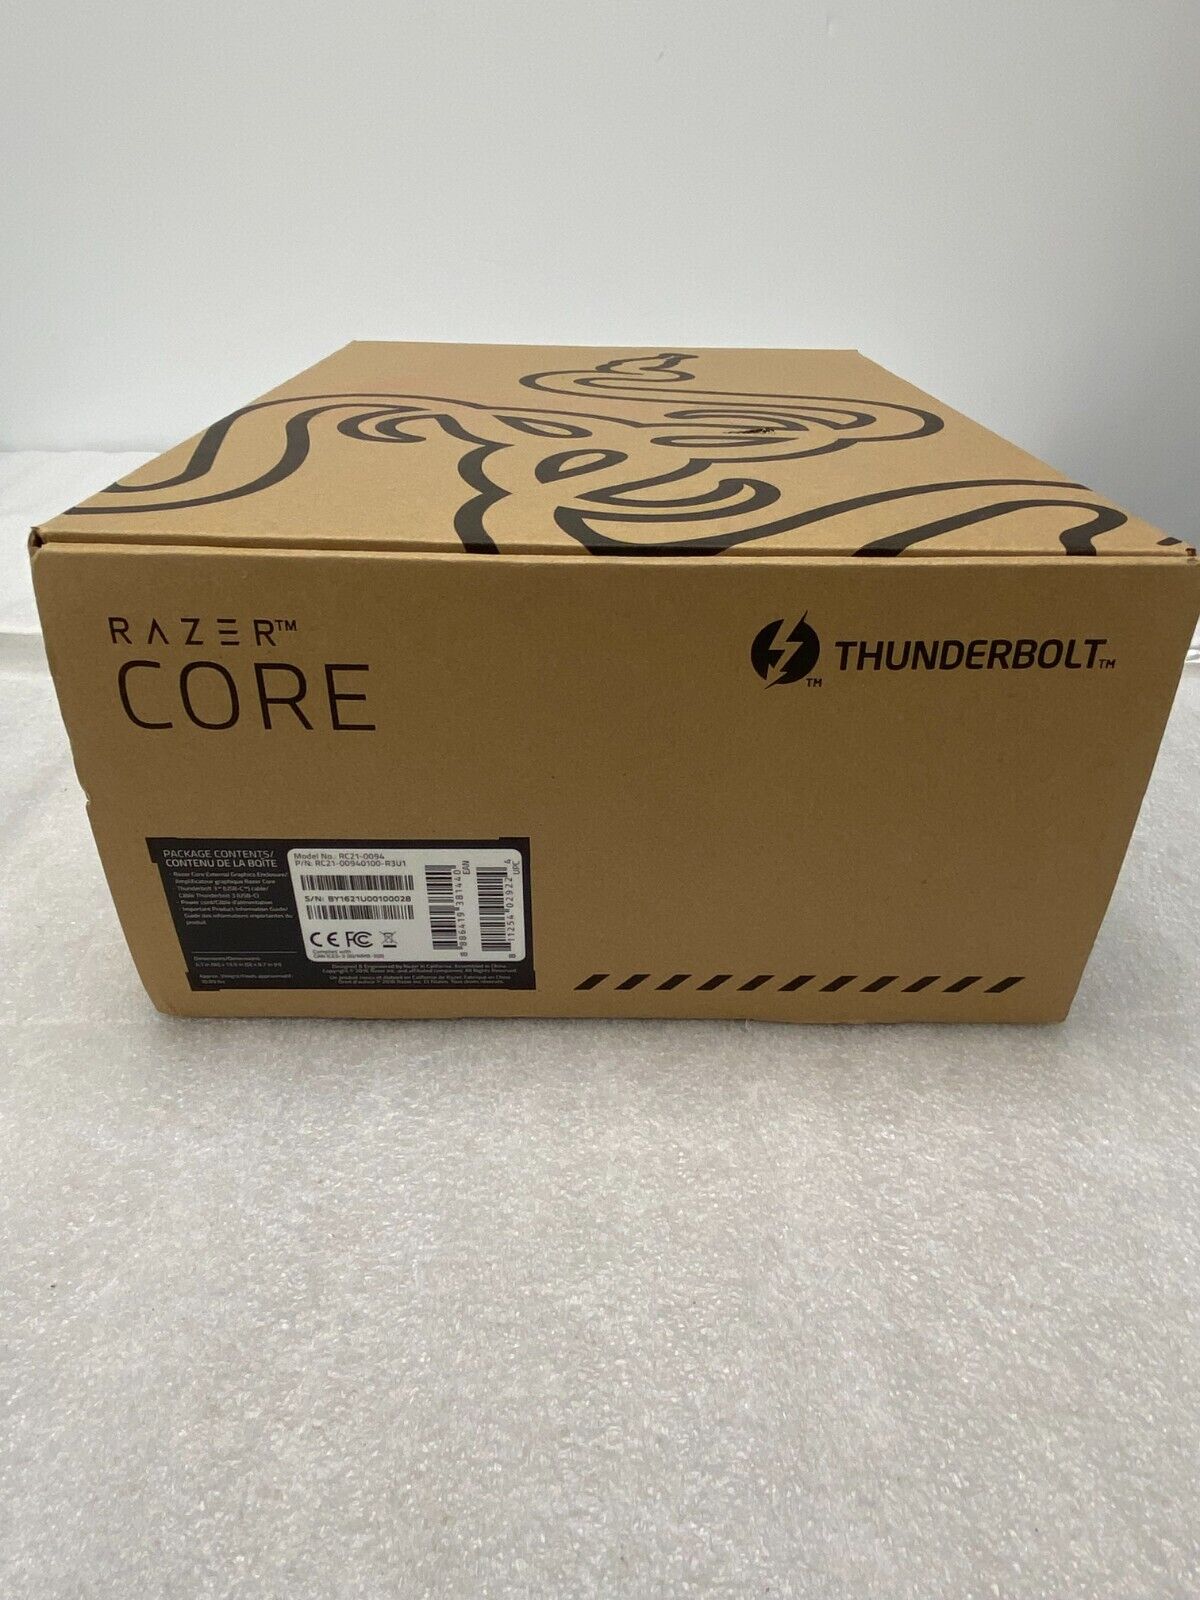 Razer Core RC21-0094 Thunderbolt3 Egpu External GPU Graphics Card Enclosure